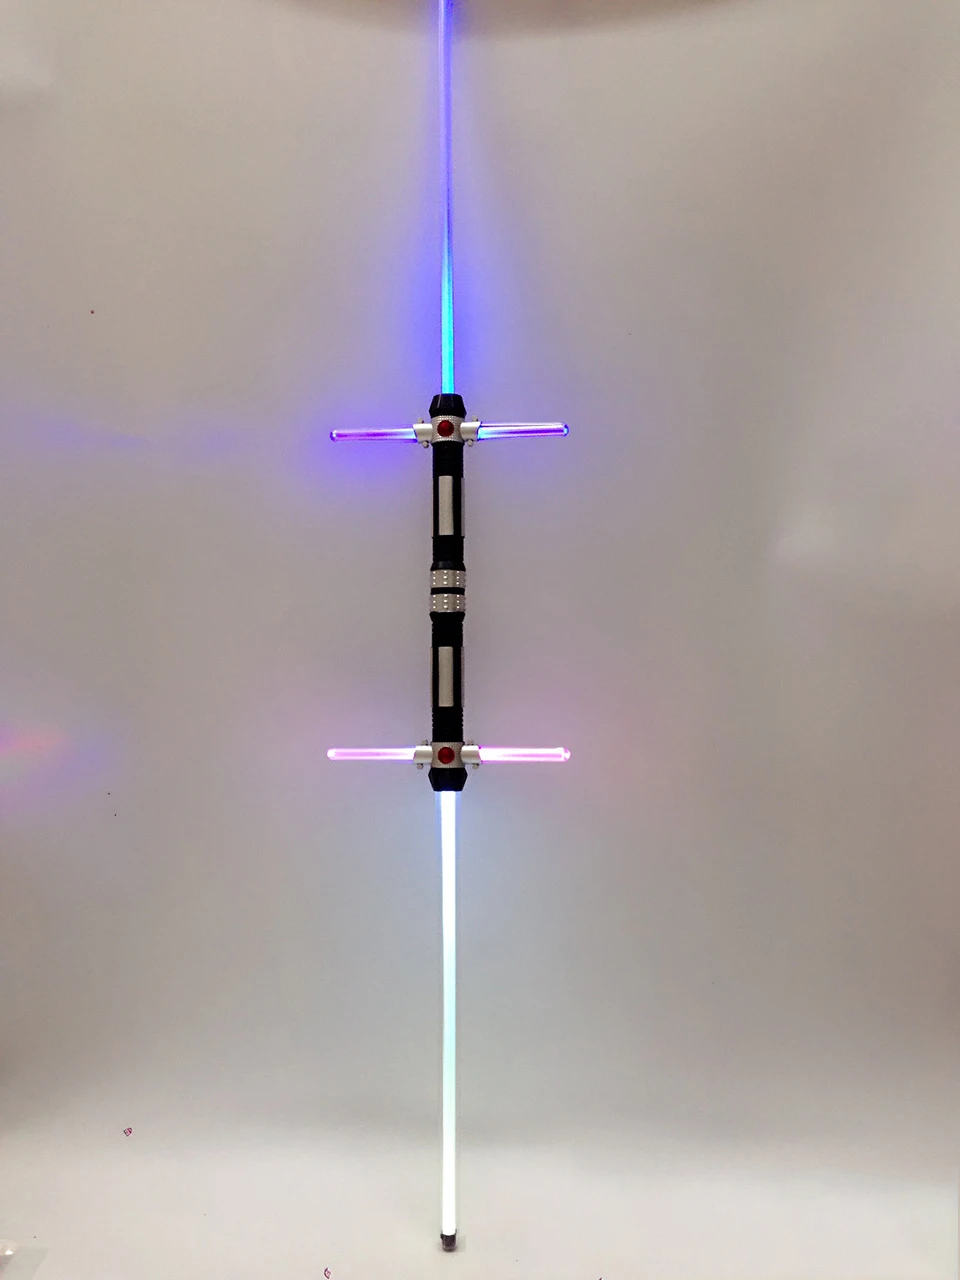 1pc Épée Laser Combinée Lumière Clignotante Épée Épée Tournant